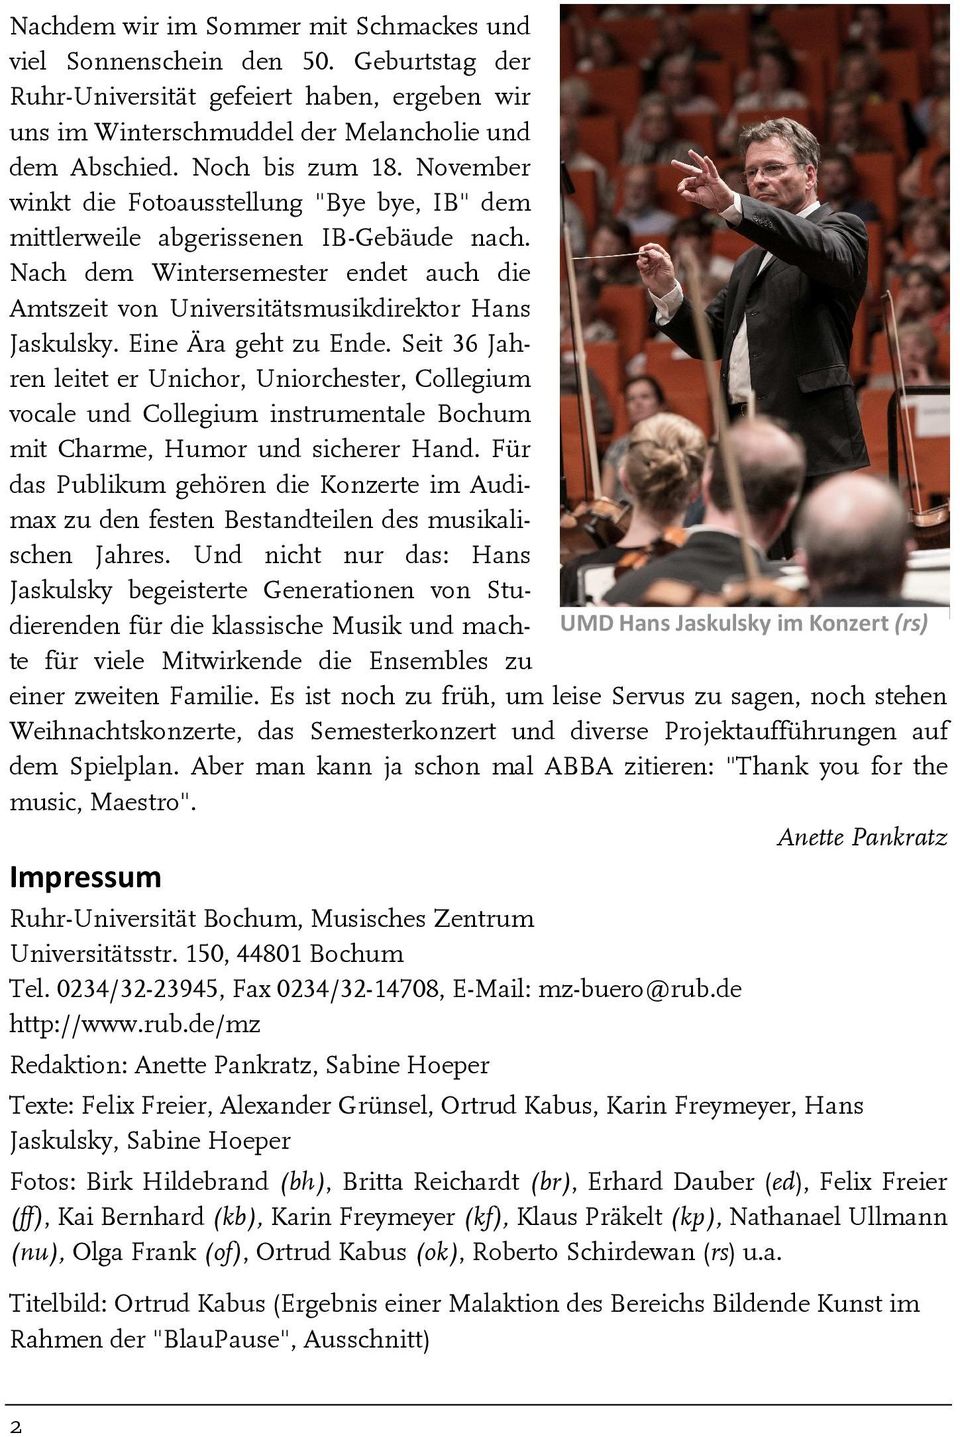 Eine Ära geht zu Ende. Seit 36 Jahren leitet er Unichor, Uniorchester, Collegium vocale und Collegium instrumentale Bochum mit Charme, Humor und sicherer Hand.